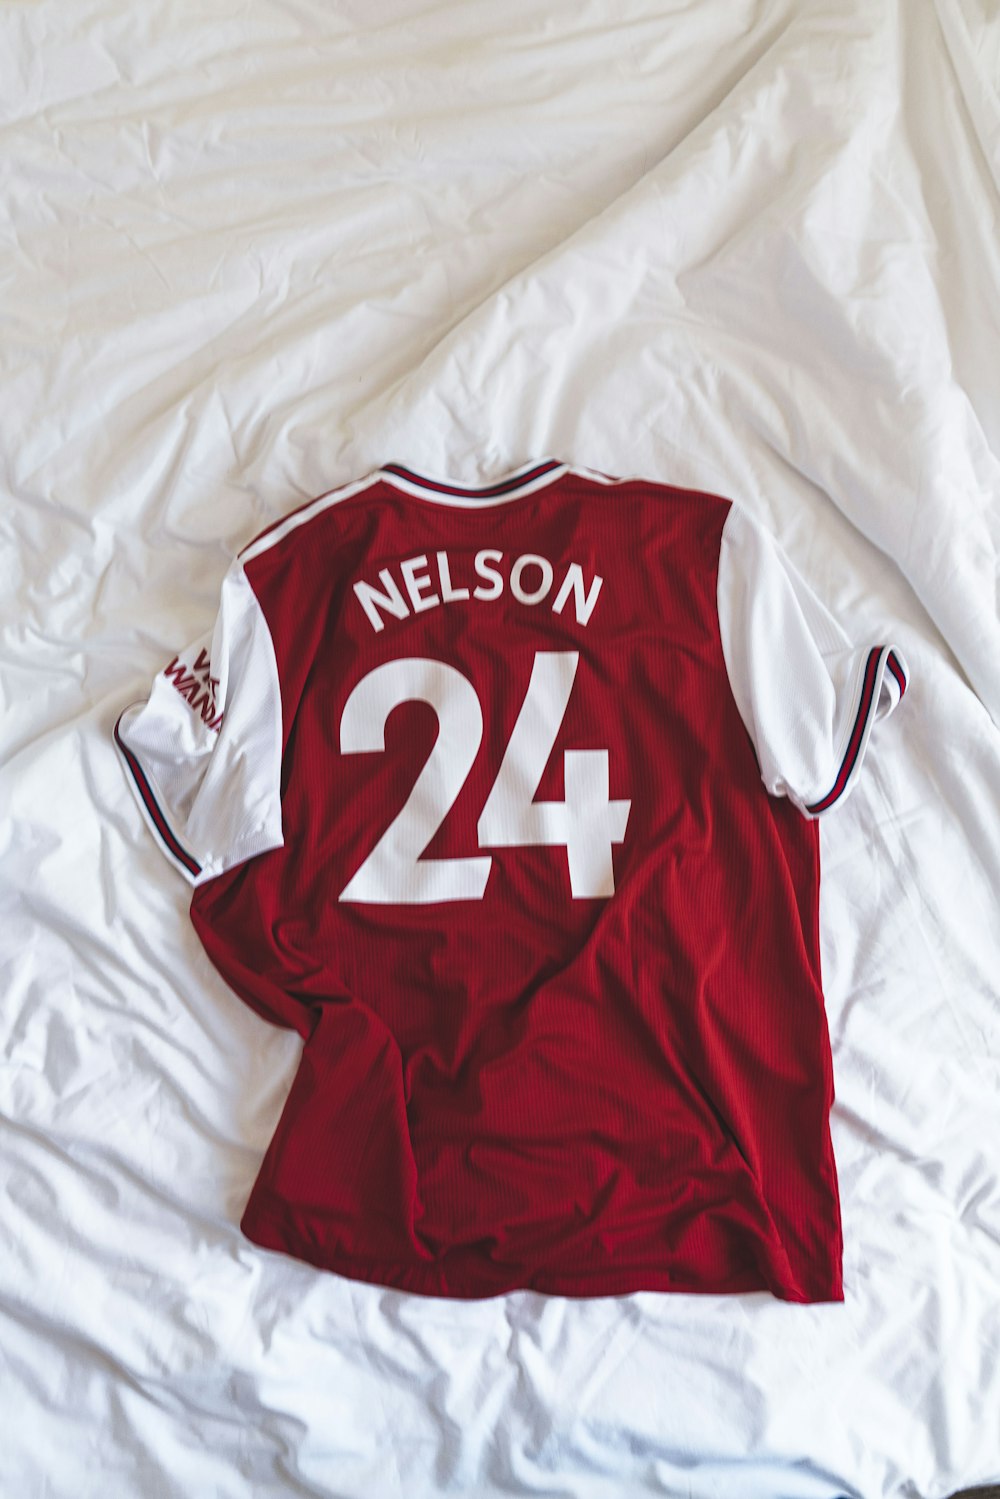 camiseta Nelson 24 roja y blanca